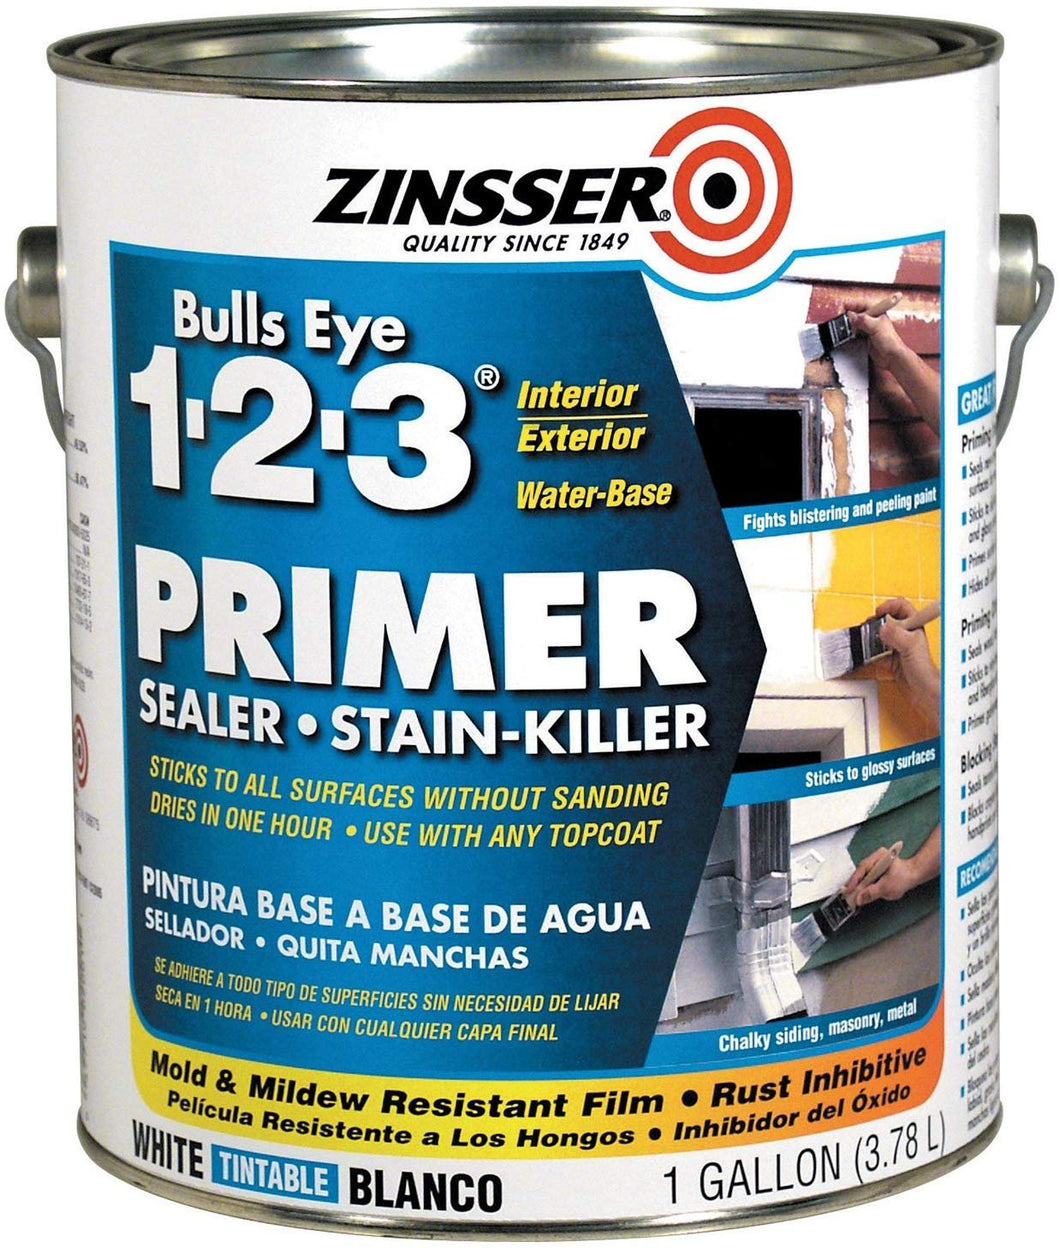 Zinsser Bulls Eye 1-2-3 Primer Sealer Stain Killer 02001 4- Gallons